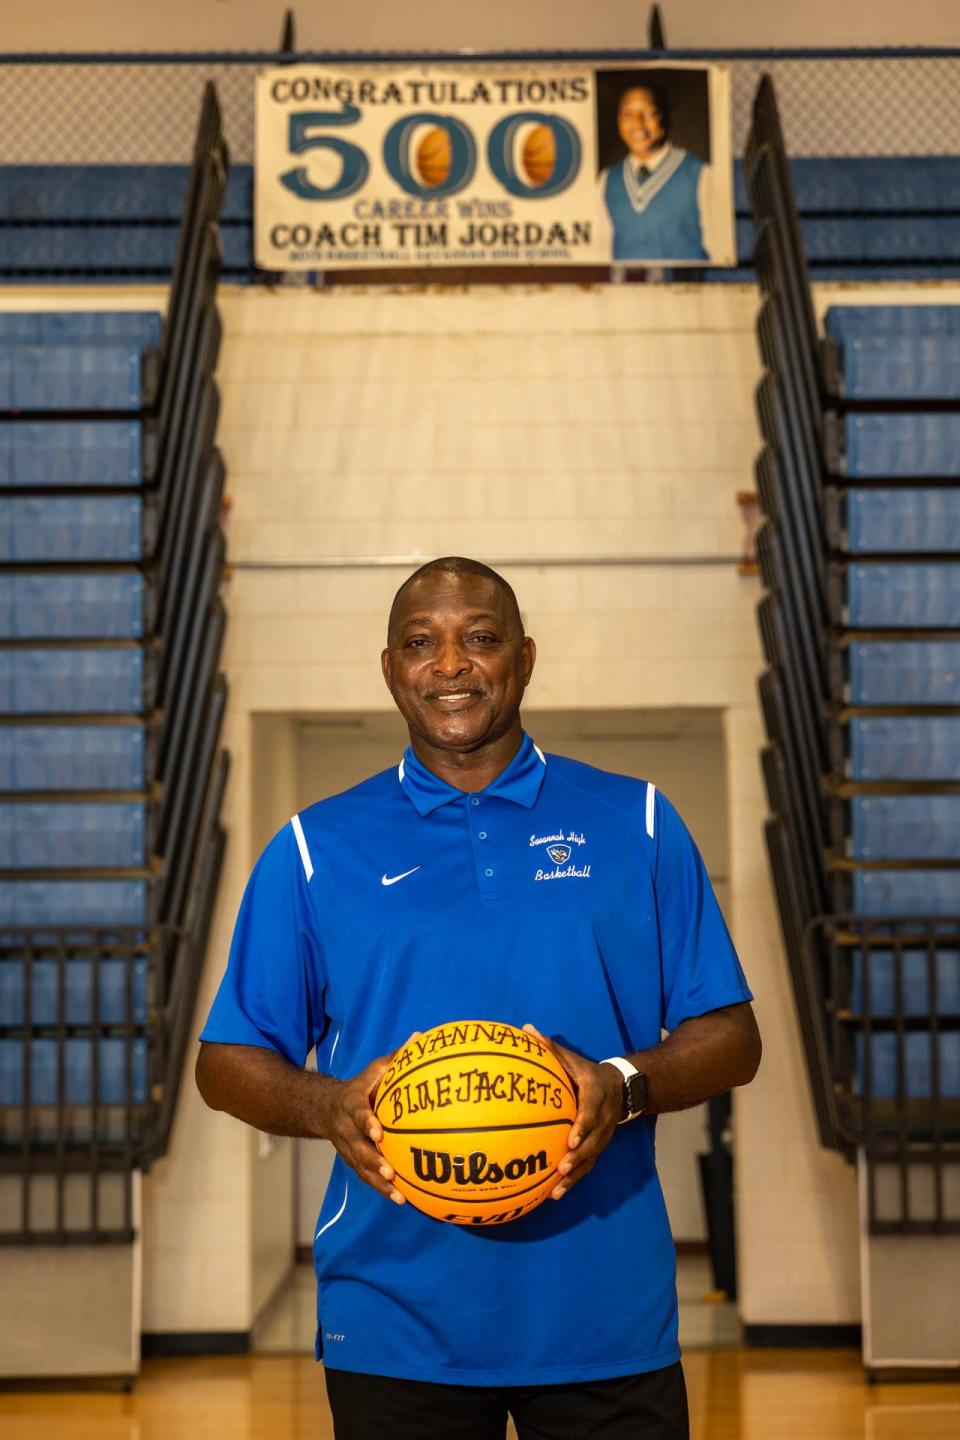 Savannah High basketball coach Tim Jordan has won more than 500 games in his career as head coach of the Blue Jackets.